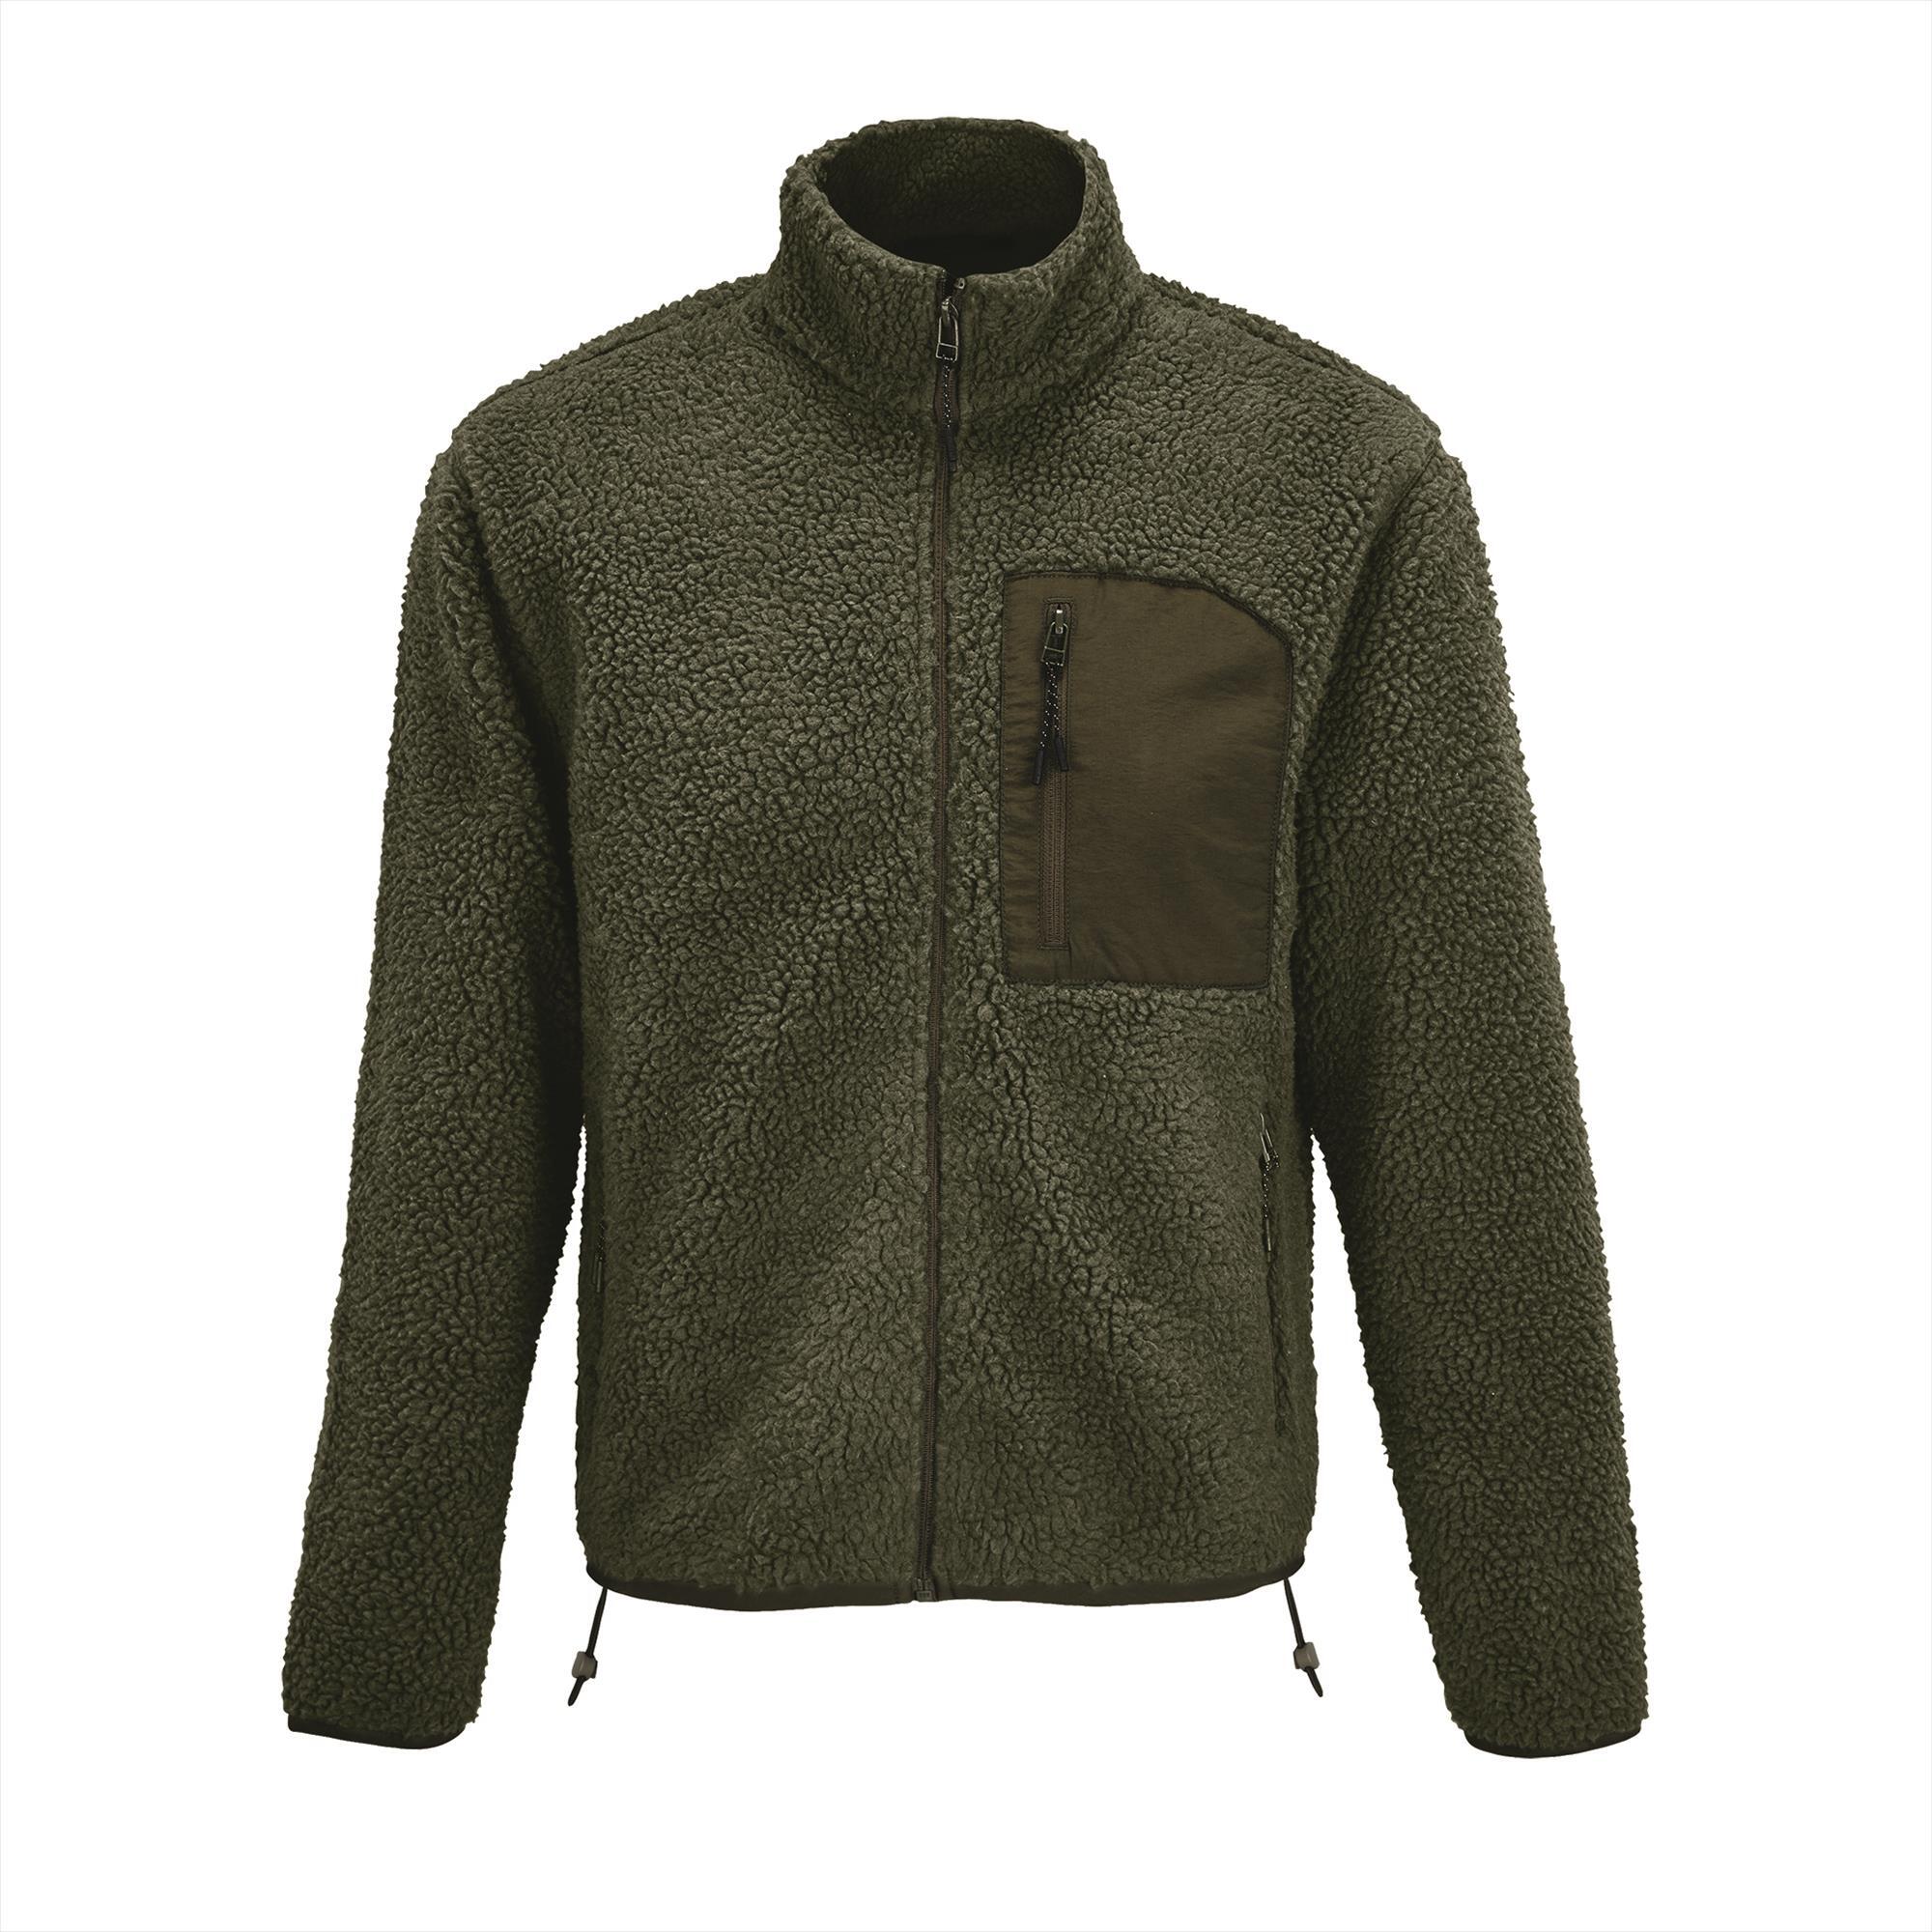 Unisex sherpa fleece jacket donkergroen